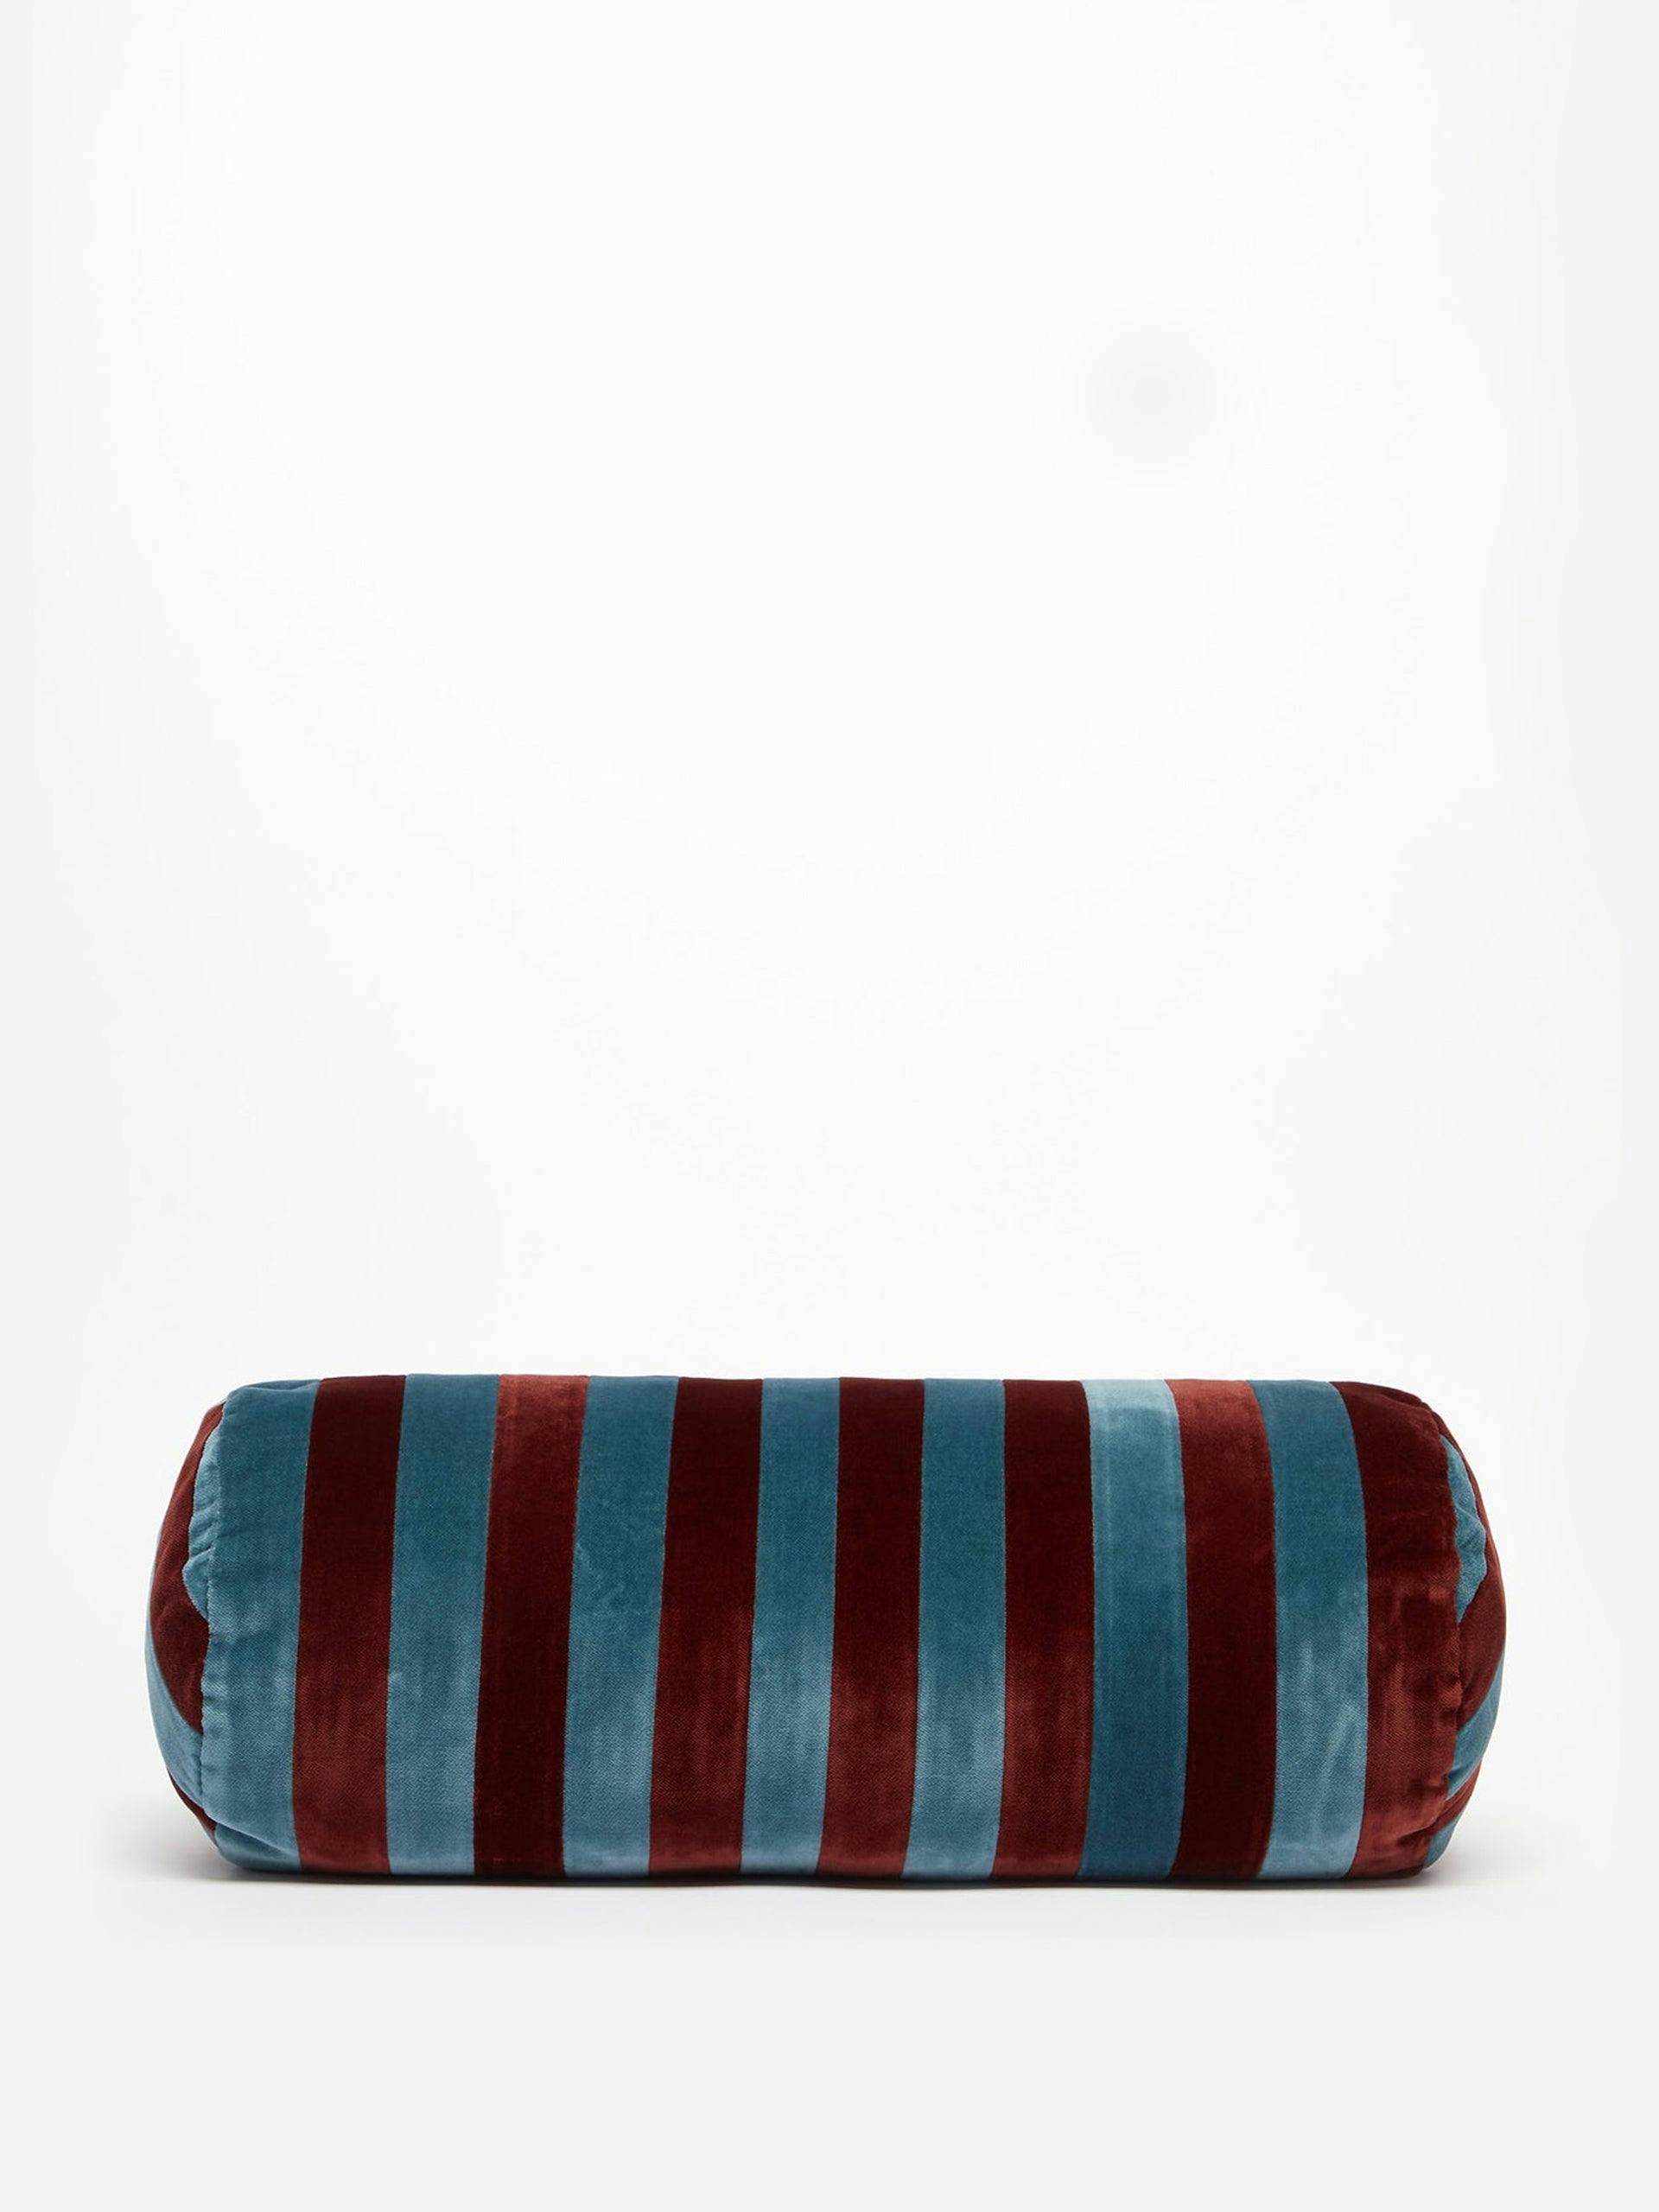 Striped velvet bolster cushion